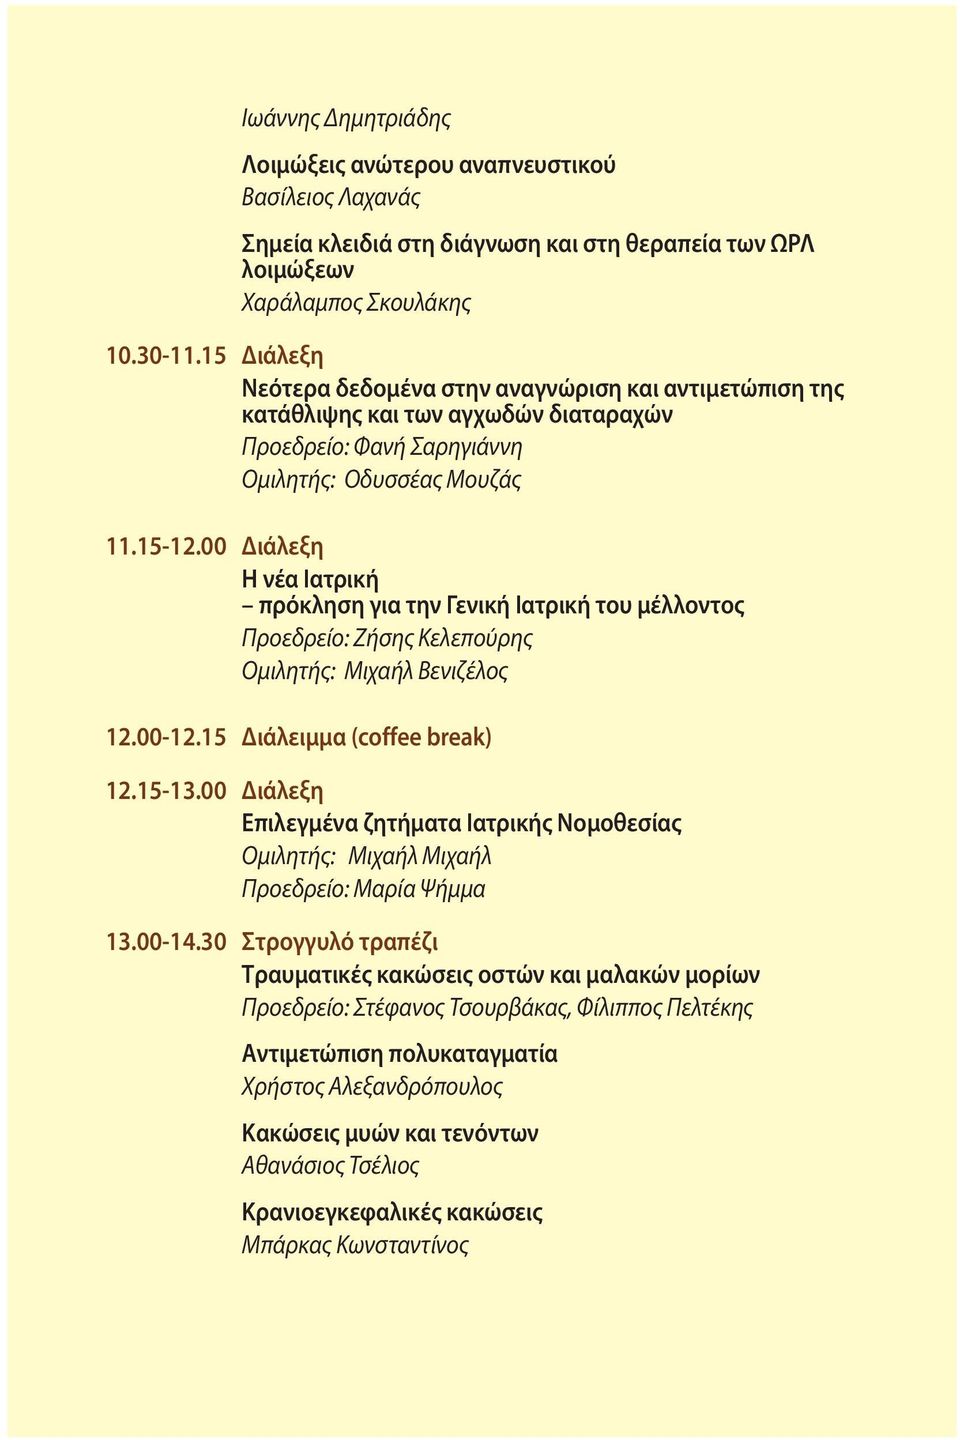 00 Διάλεξη Η νέα Ιατρική πρόκληση για την Γενική Ιατρική του μέλλοντος Προεδρείο: Ζήσης Κελεπούρης Ομιλητής: Μιχαήλ Βενιζέλος 12.00-12.15 Διάλειμμα (coffee break) 12.15-13.